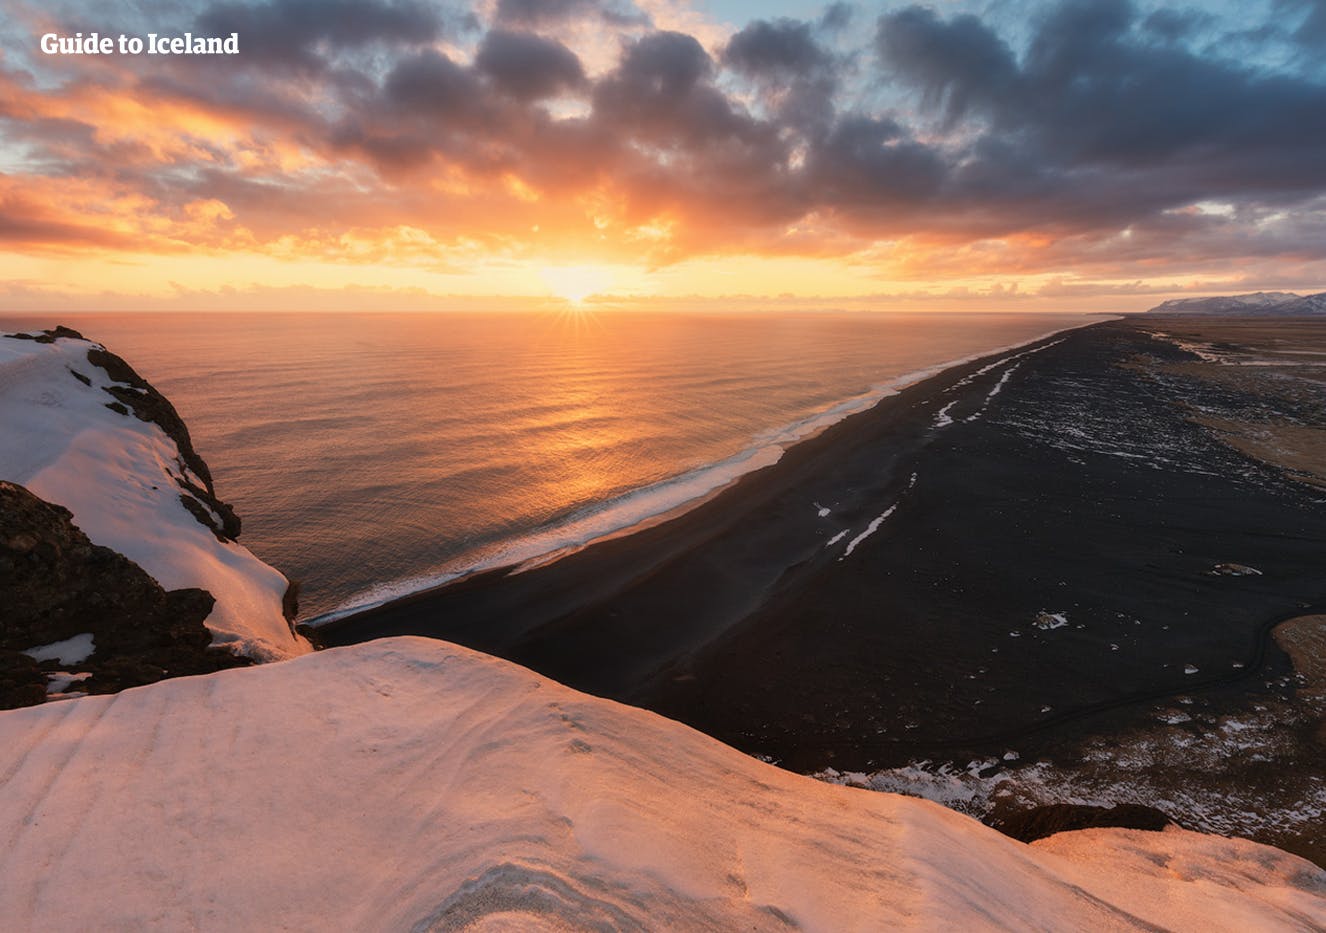 在冬季时可以在冰岛南岸雷尼斯黑沙滩(Reynisfjara)上找到各种各样的迷人色彩